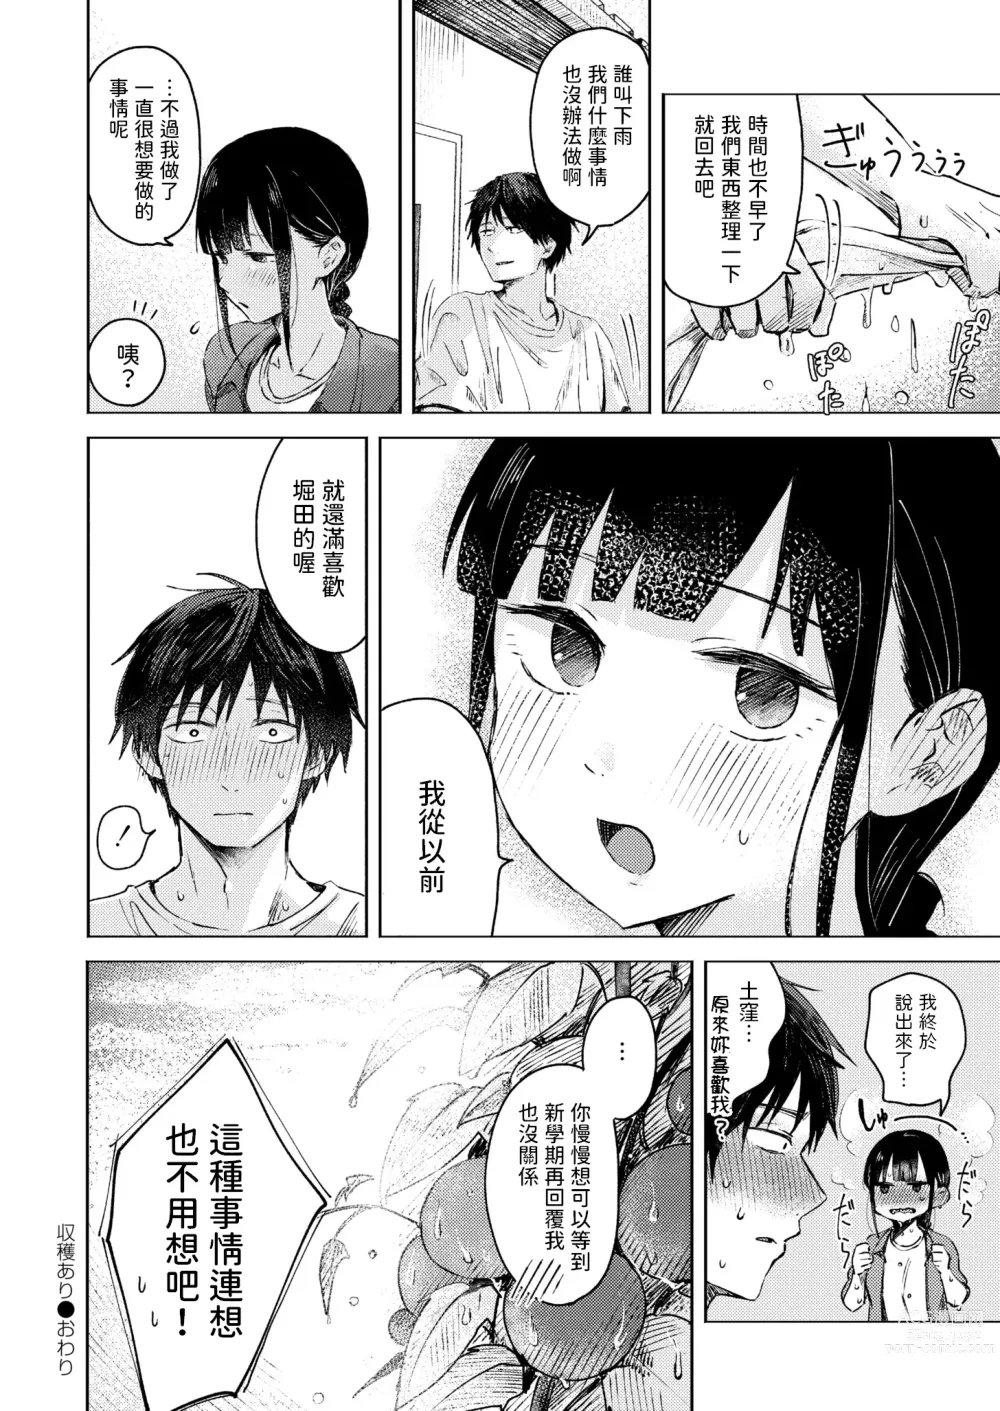 Page 20 of manga Shuukaku Ari